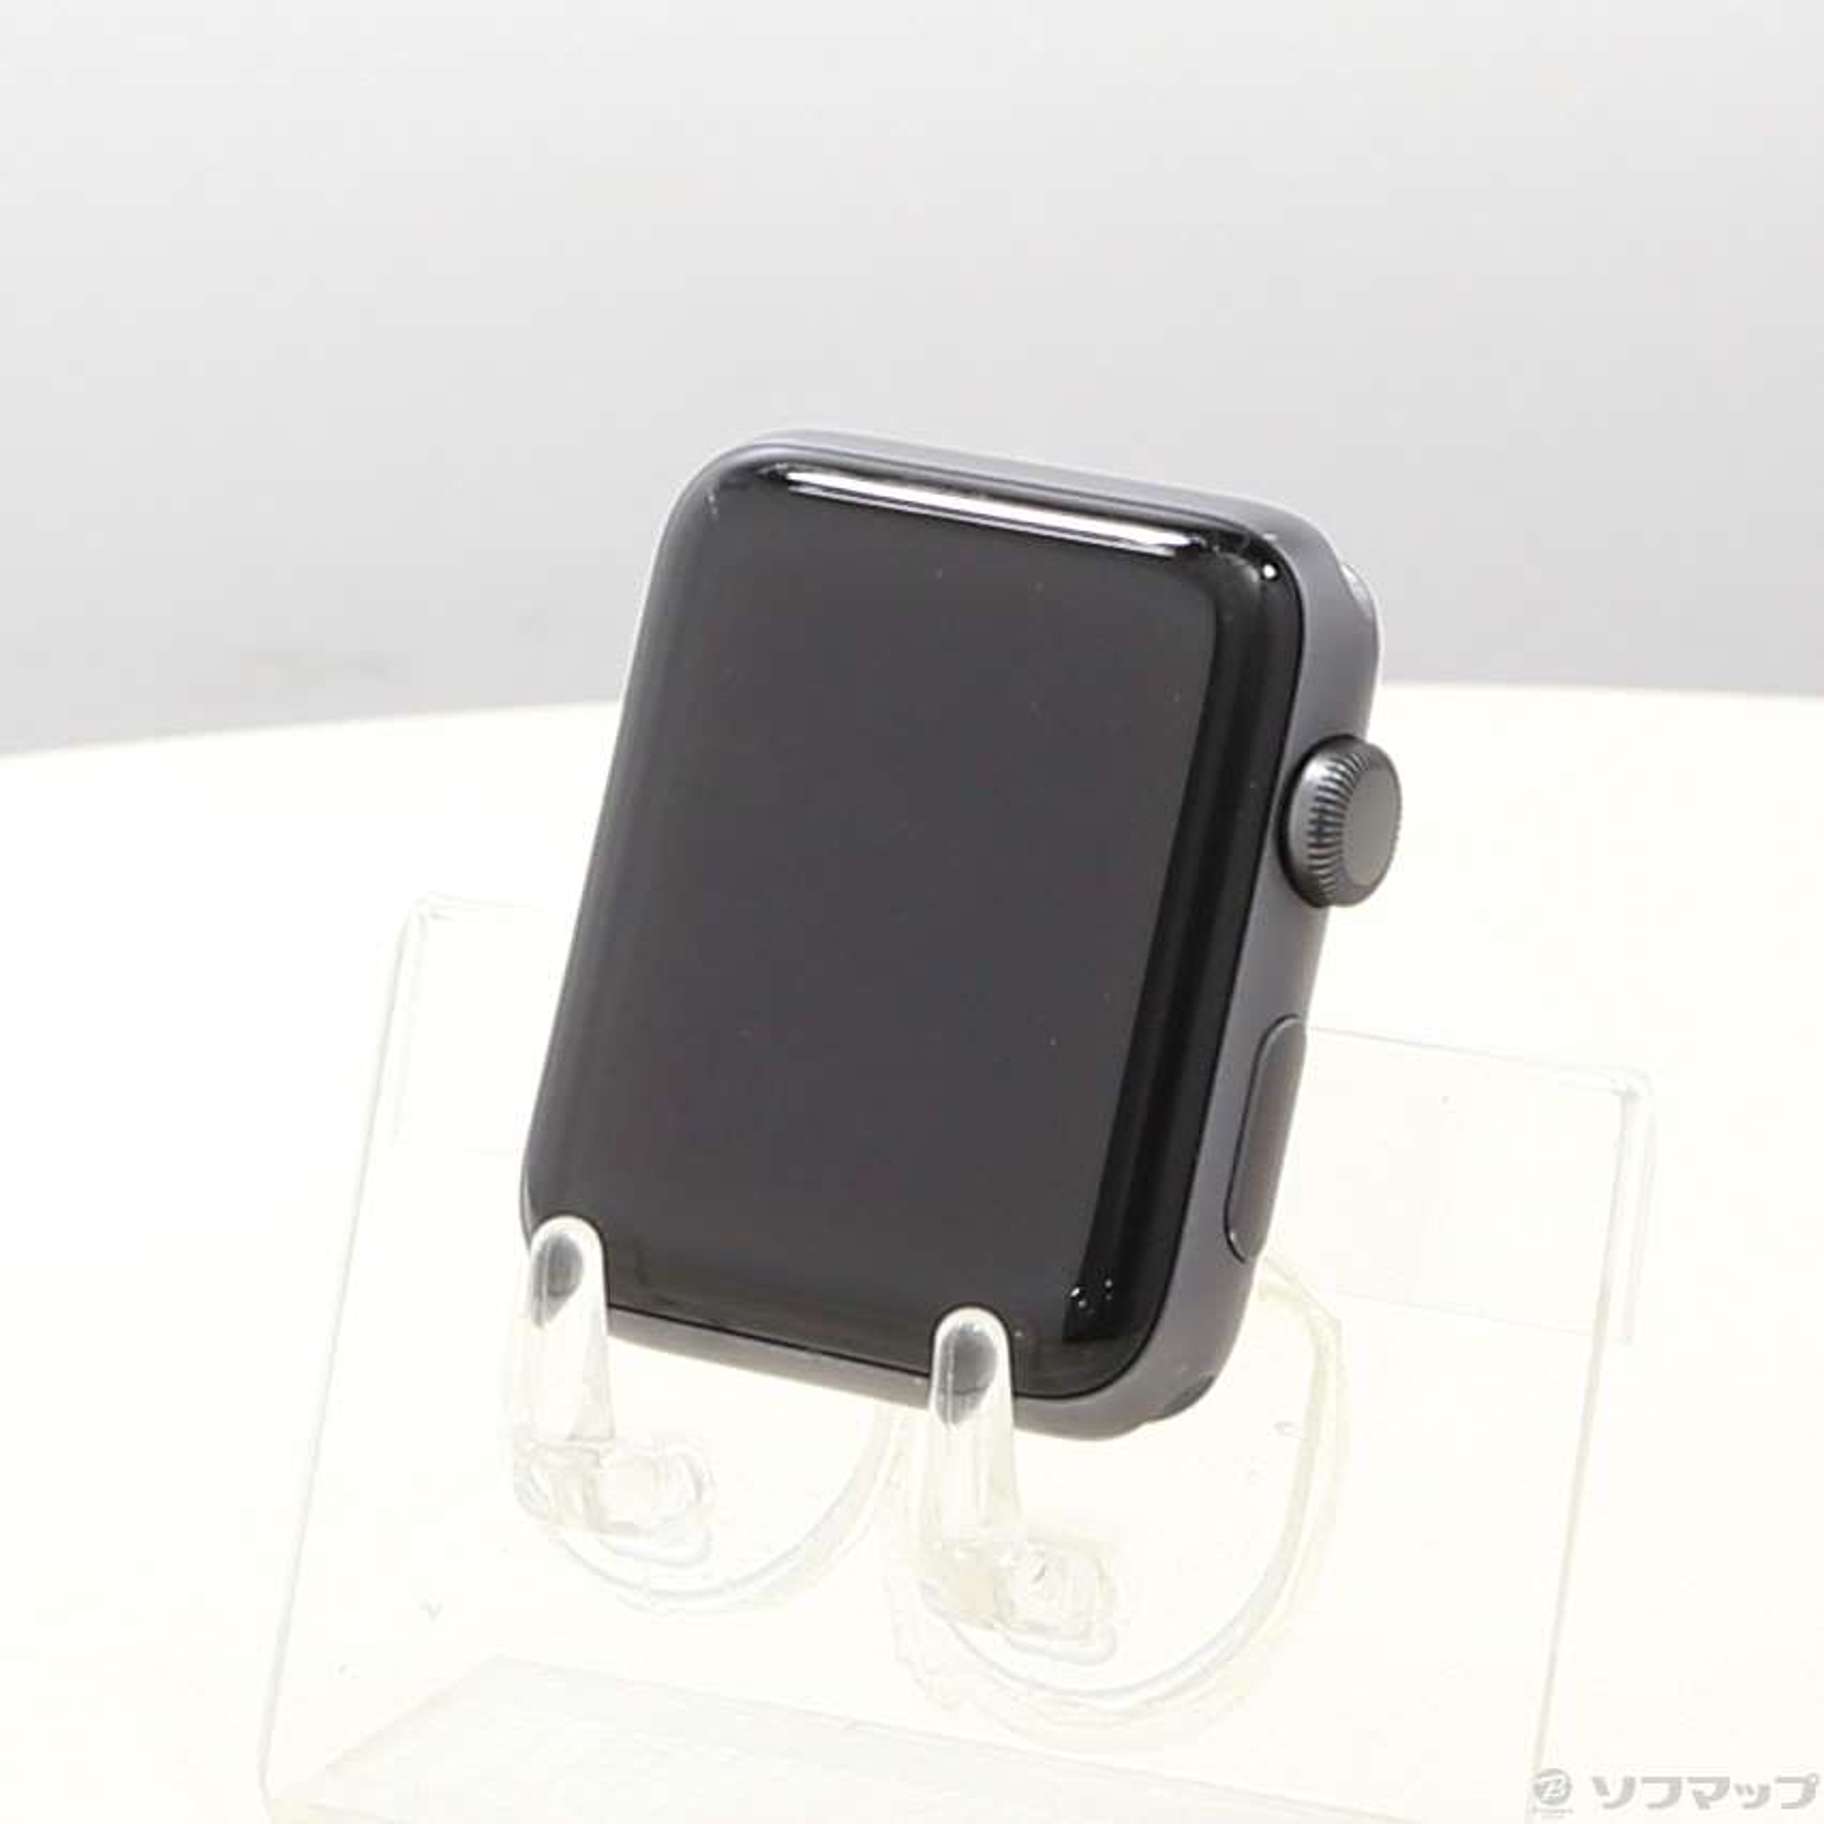 中古品〕 Apple Watch Series 3 GPS 42mm スペースグレイアルミニウム ...